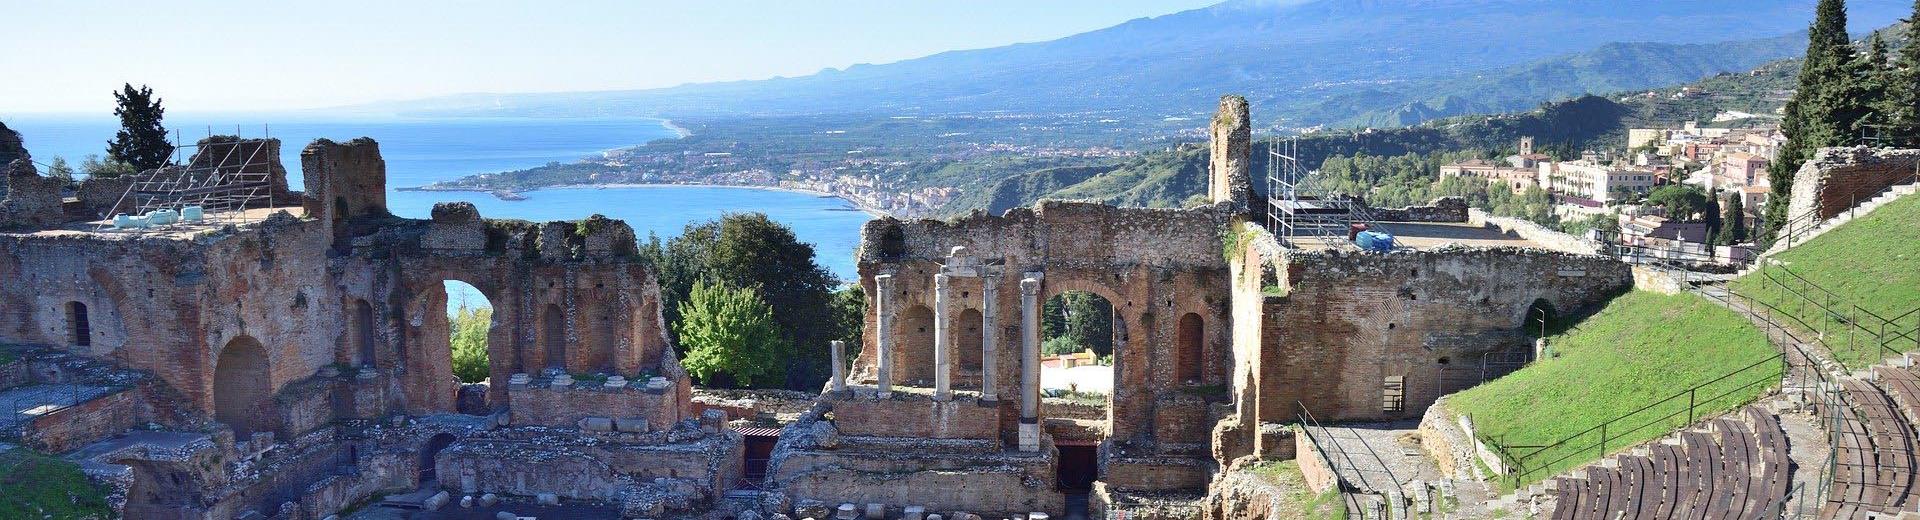 Scopri una perla della costa siciliana: Taormina è a pochi minuti da Hotel Santa Caterina, 4 stelle ad Acireale!